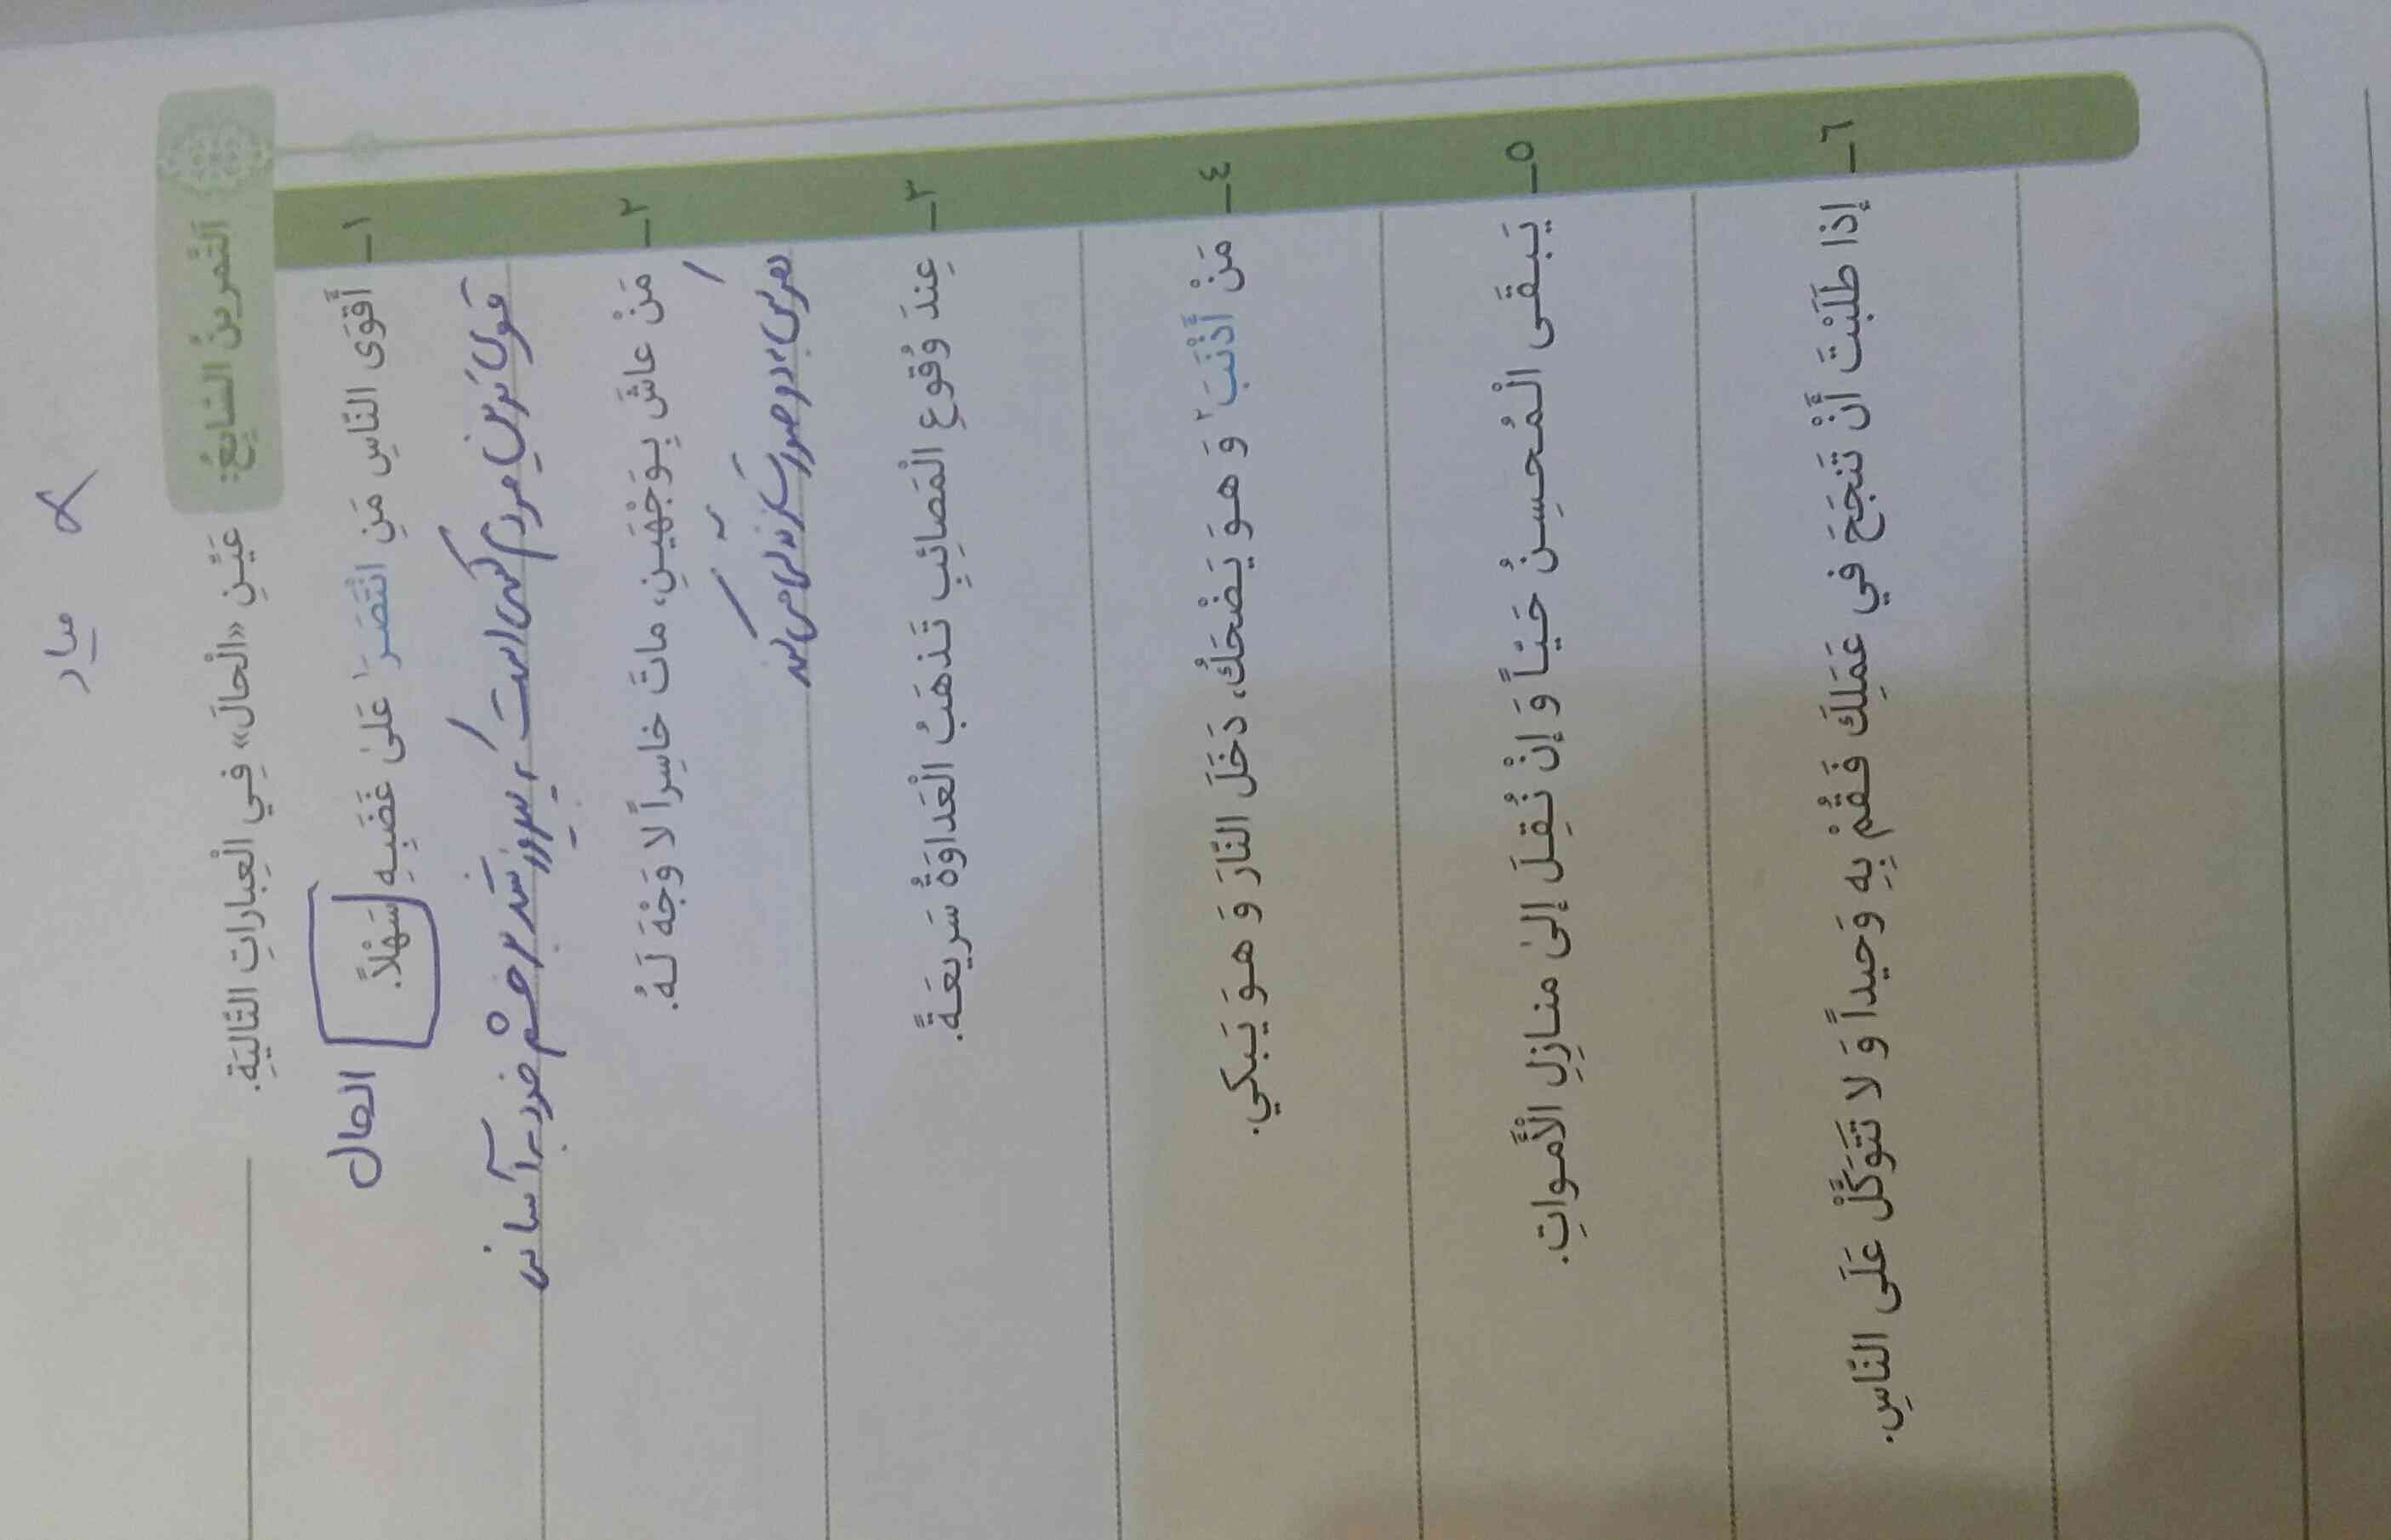 درس دوم عربی دوازدهم صفحه 35
